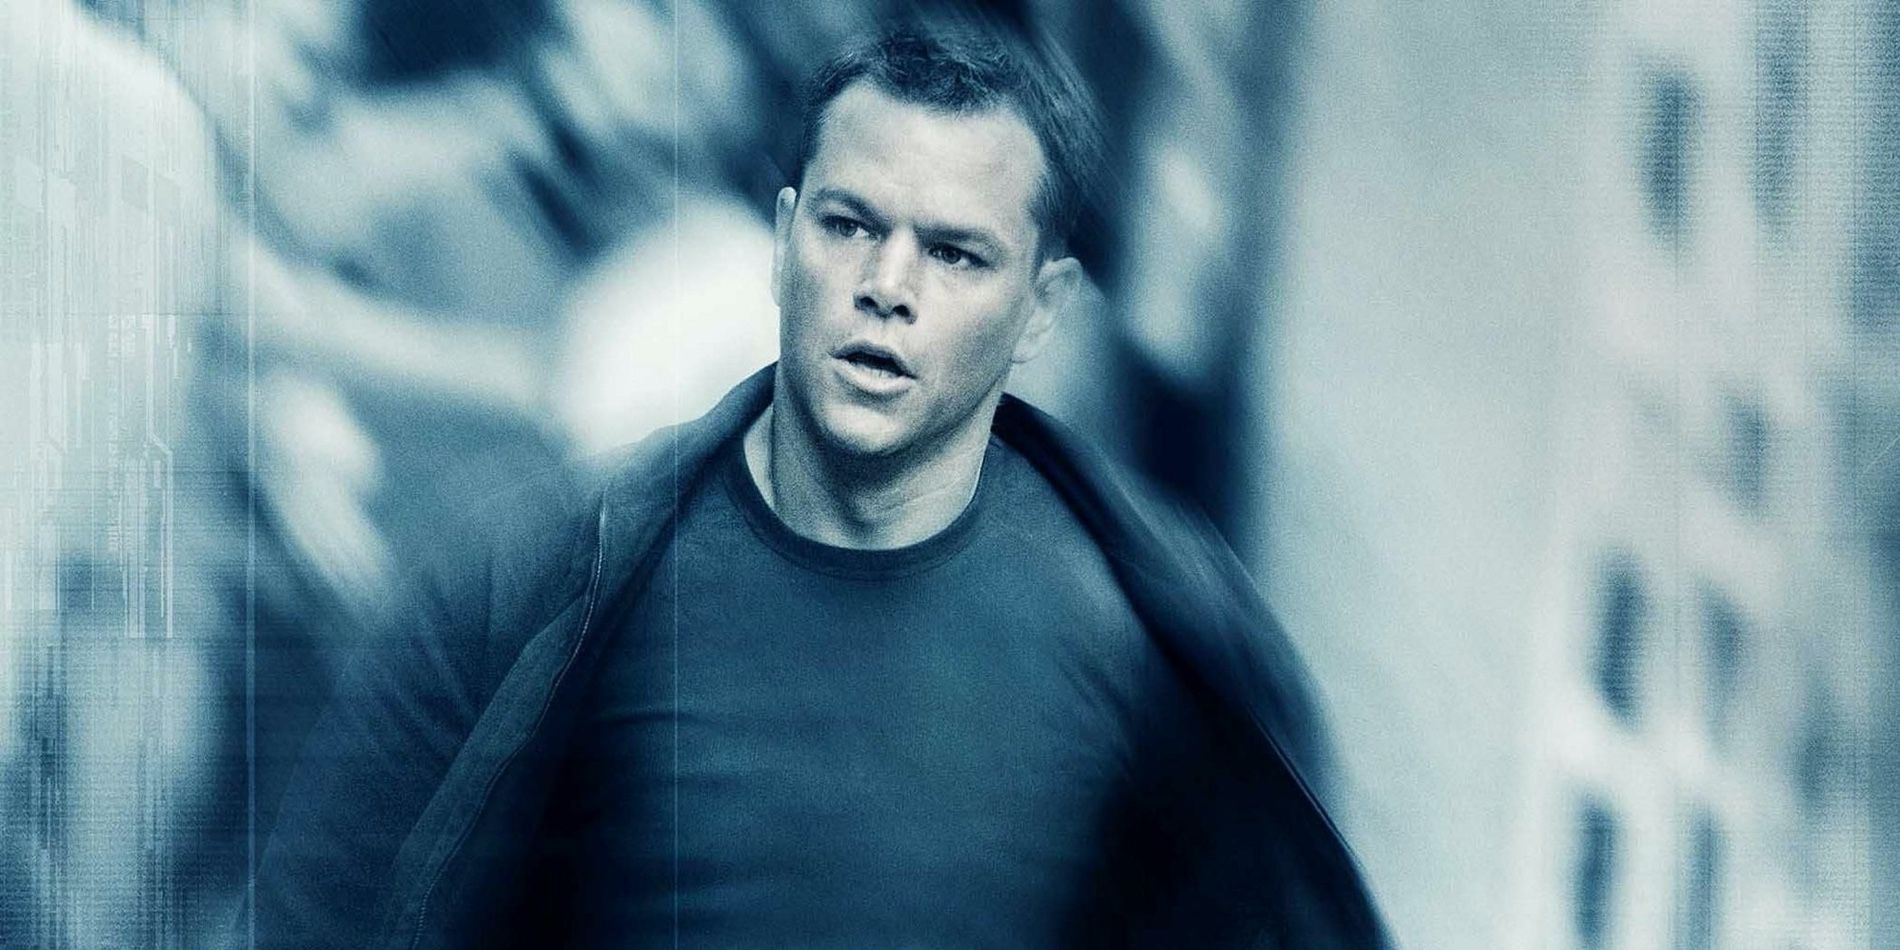 Jason Bourne in The Bourne Ultimatum